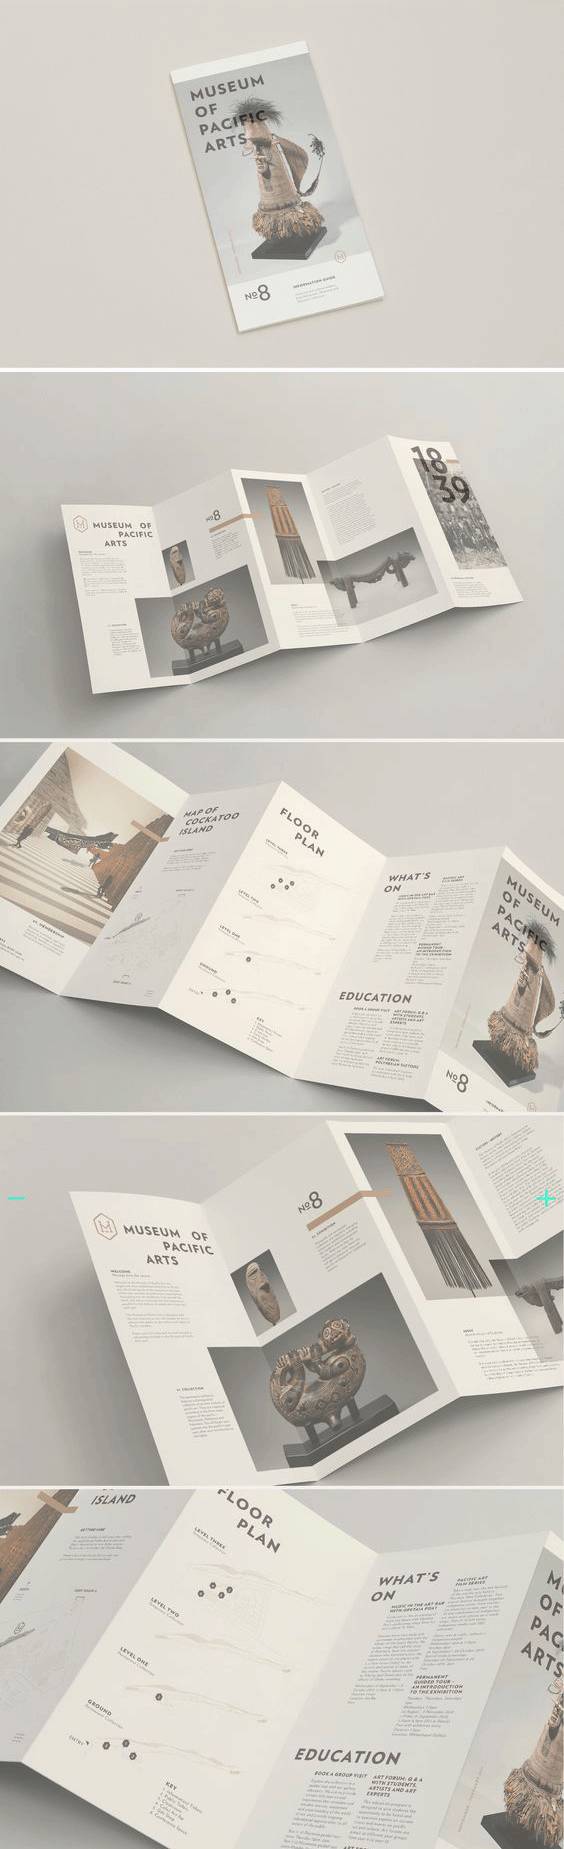 14种不同主题风格的折页设计欣赏